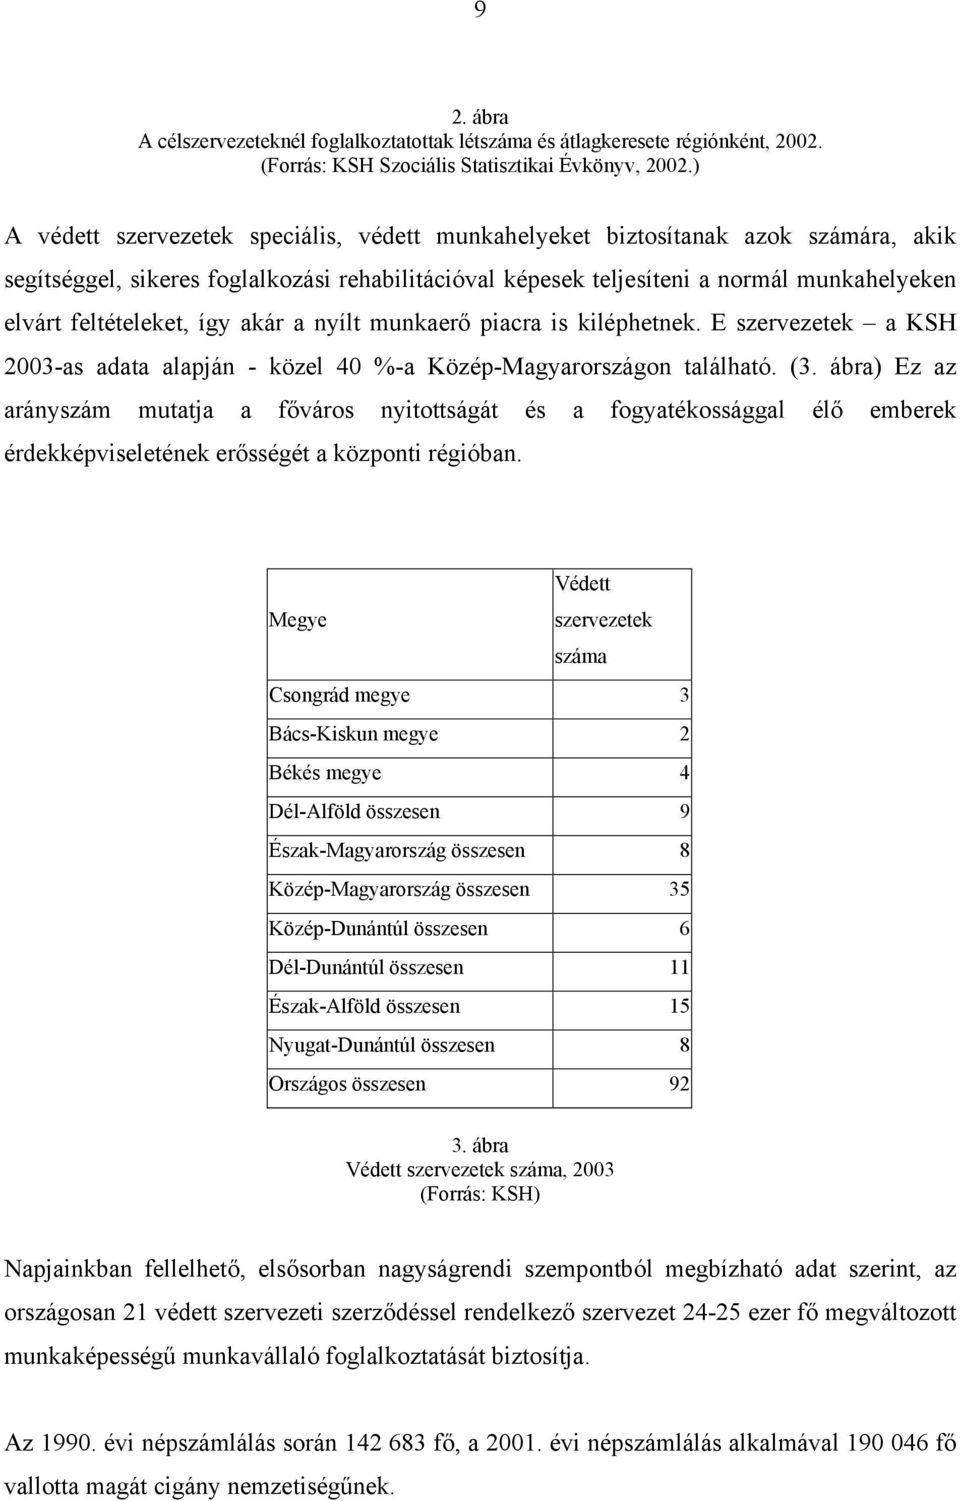 feltételeket, így akár a nyílt munkaerő piacra is kiléphetnek. E szervezetek a KSH 2003-as adata alapján - közel 40 %-a Közép-Magyarországon található. (3.